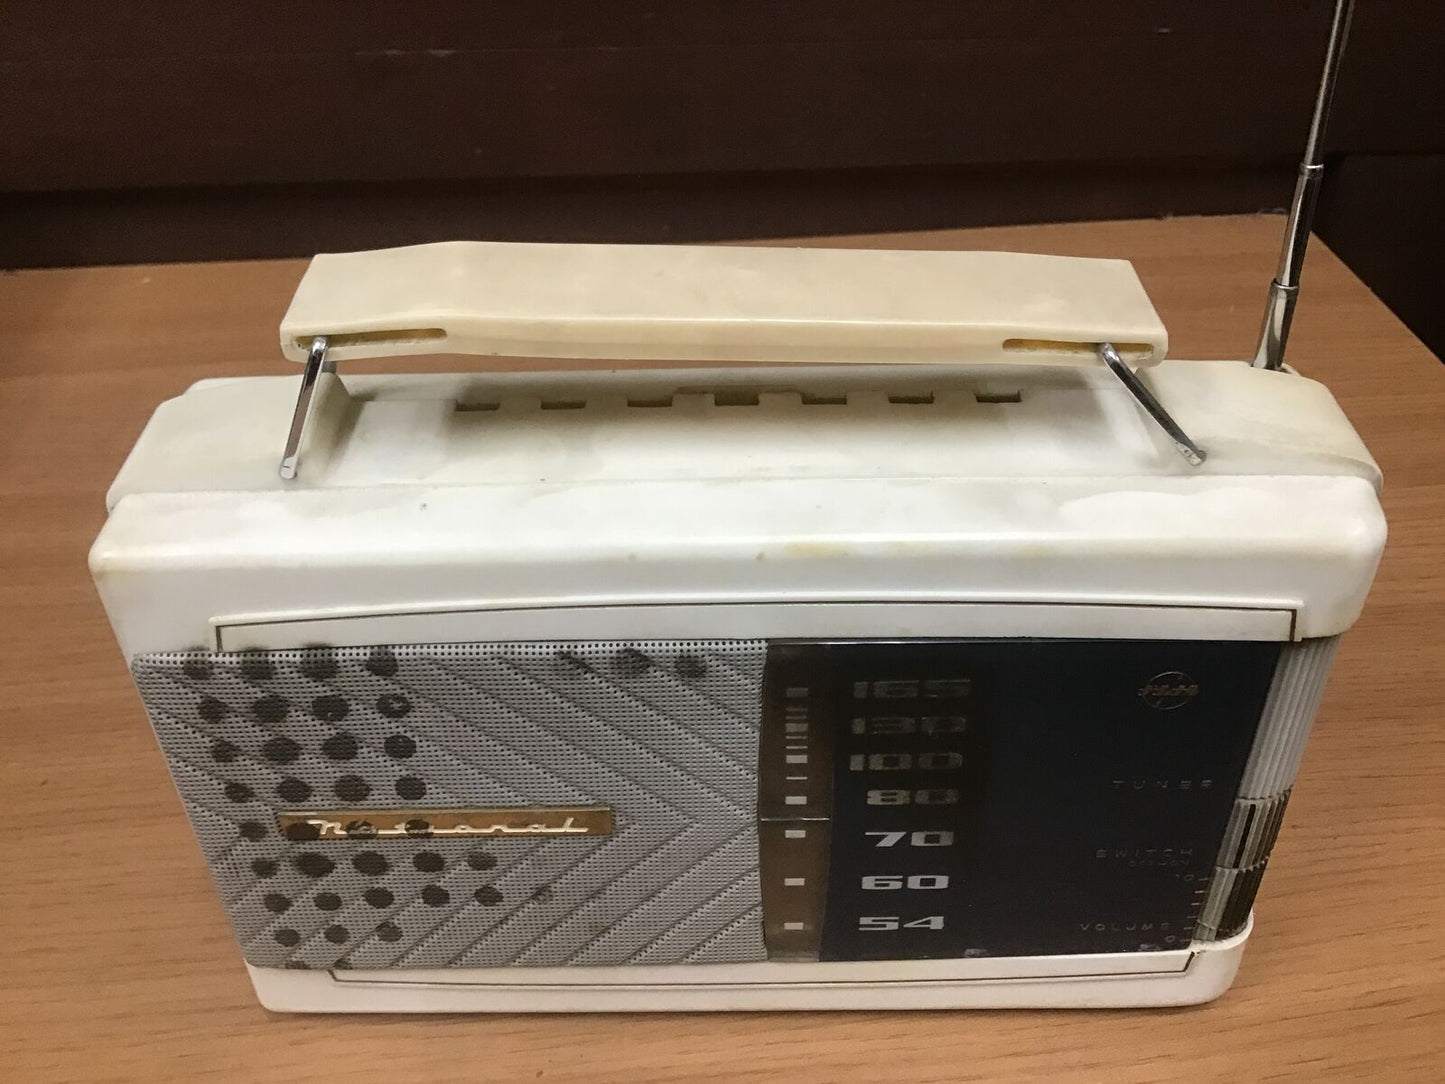 Y0941 RADIO NATIONAL transistor portable handle Japanese antique vintage